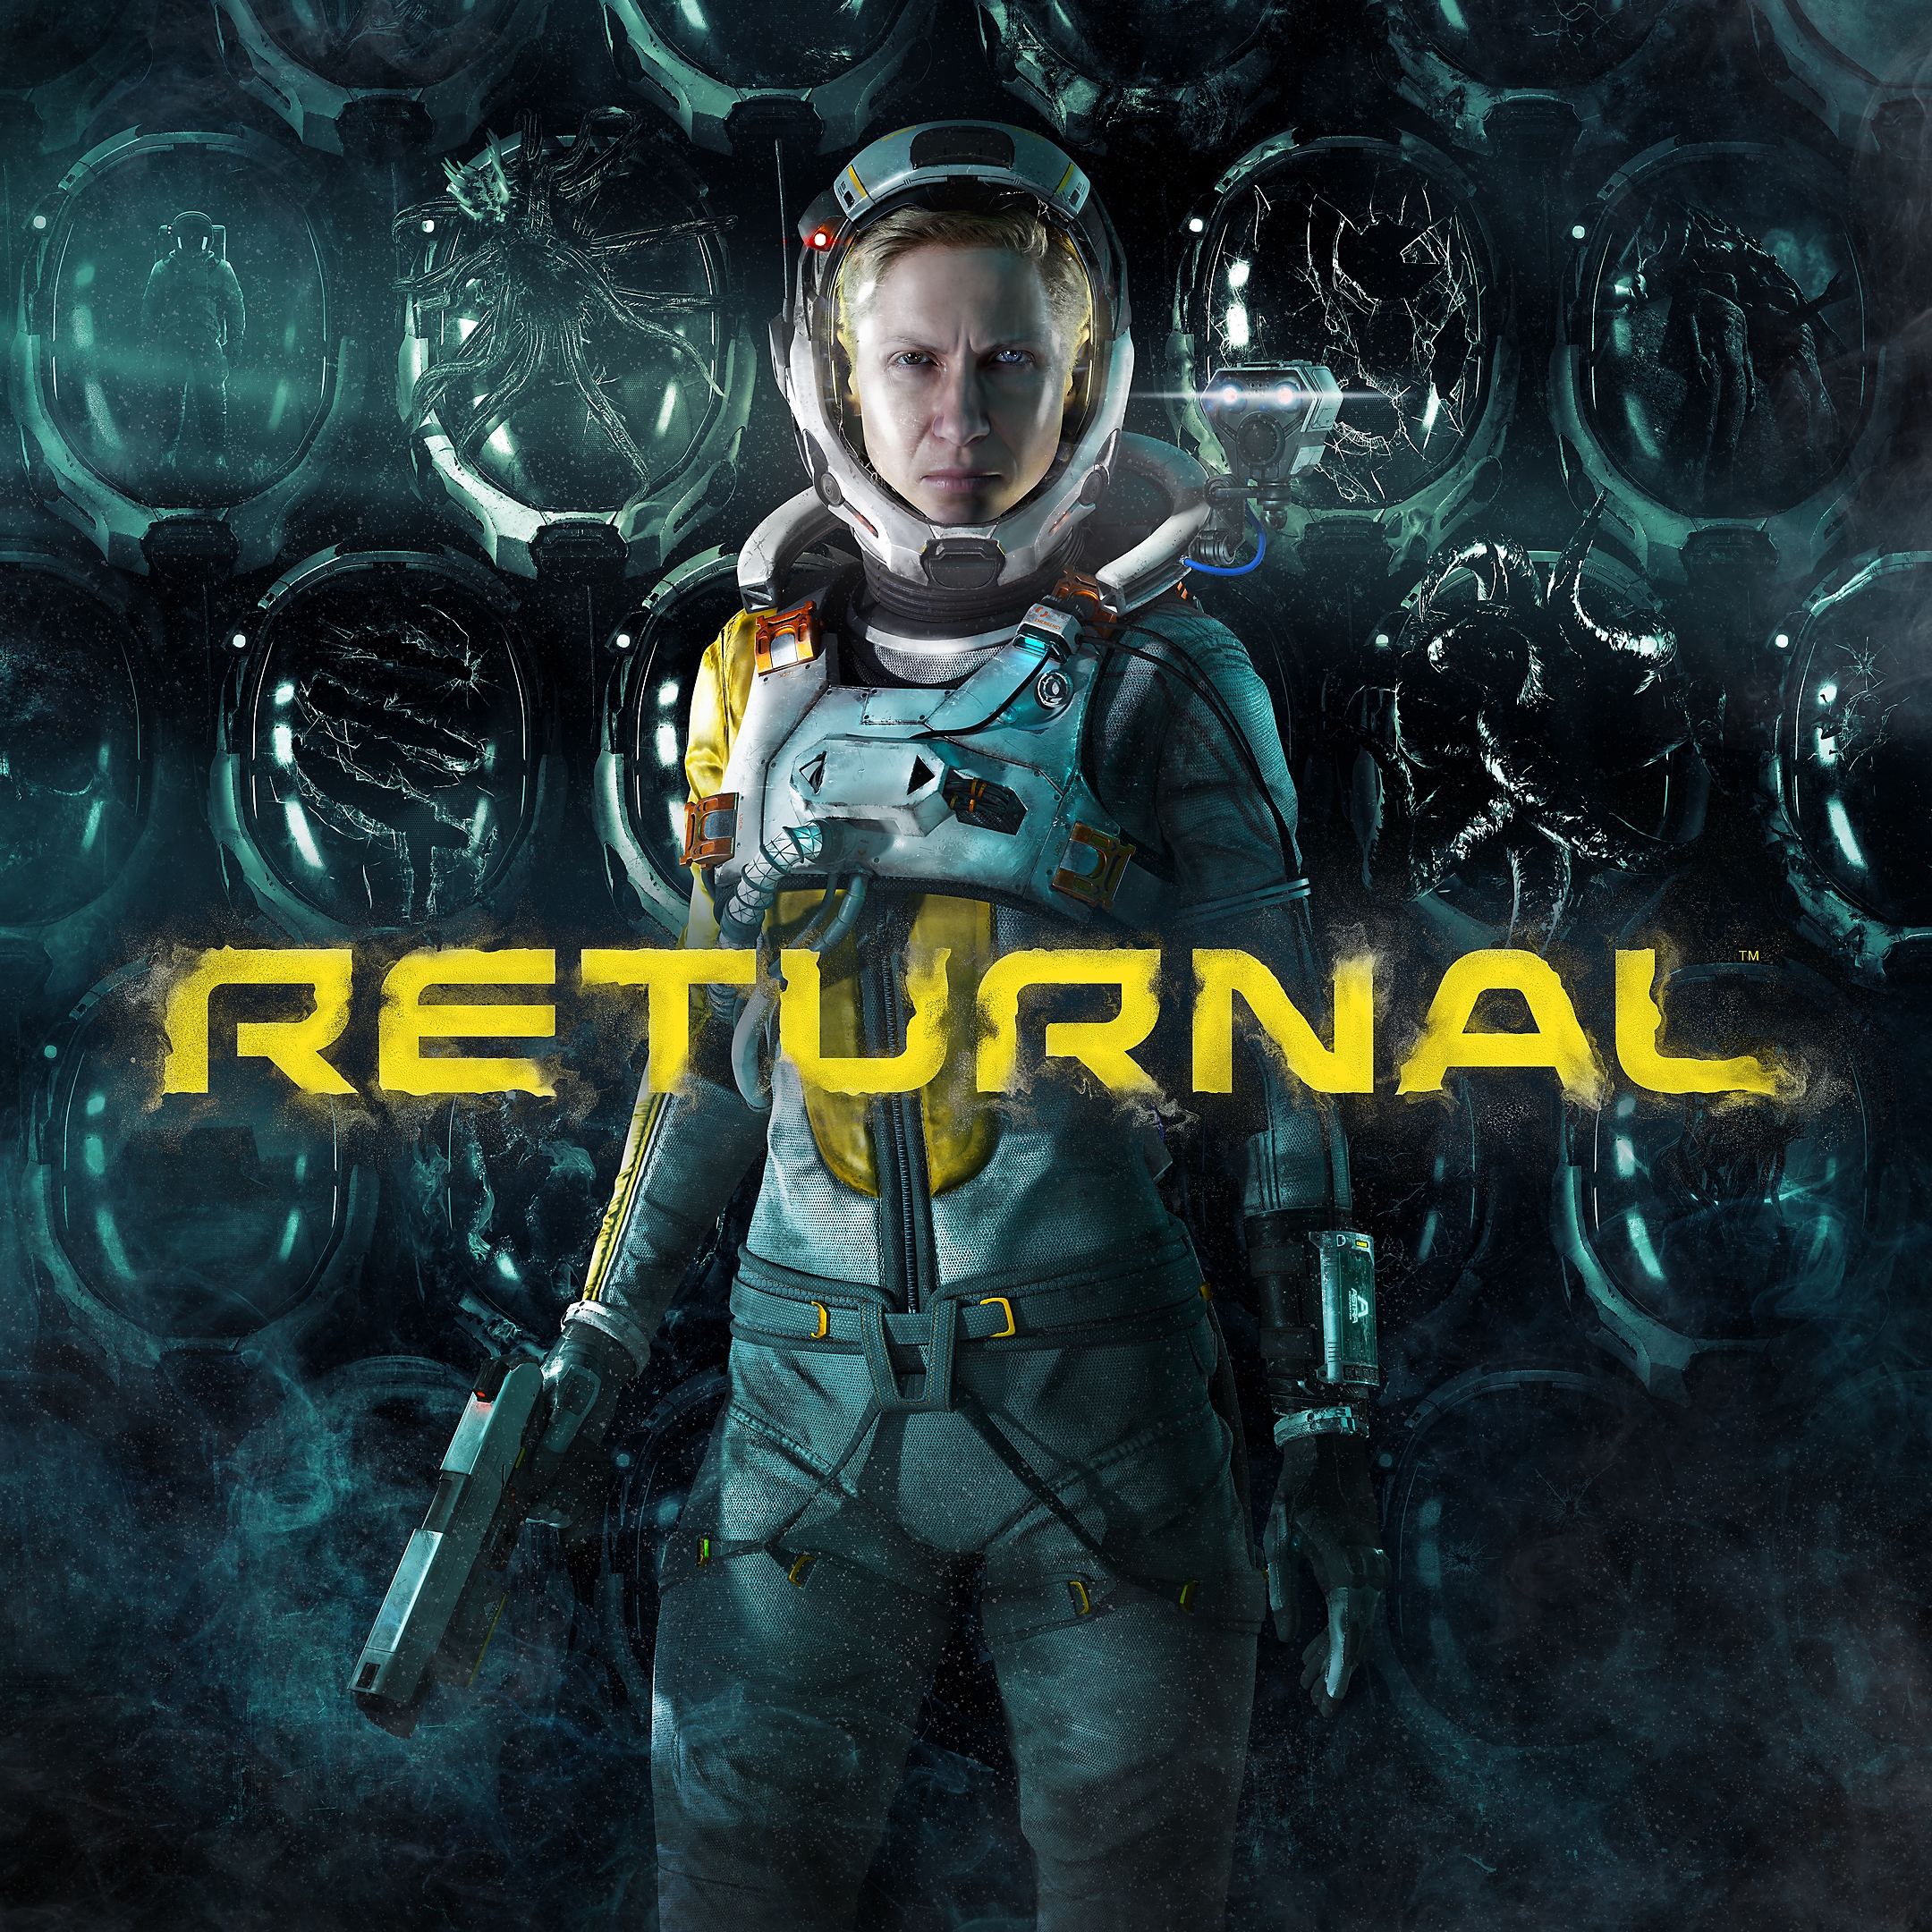 الصورة الفنية الأساسية للعبة Returnal بها وجه الشخصية بالكامل